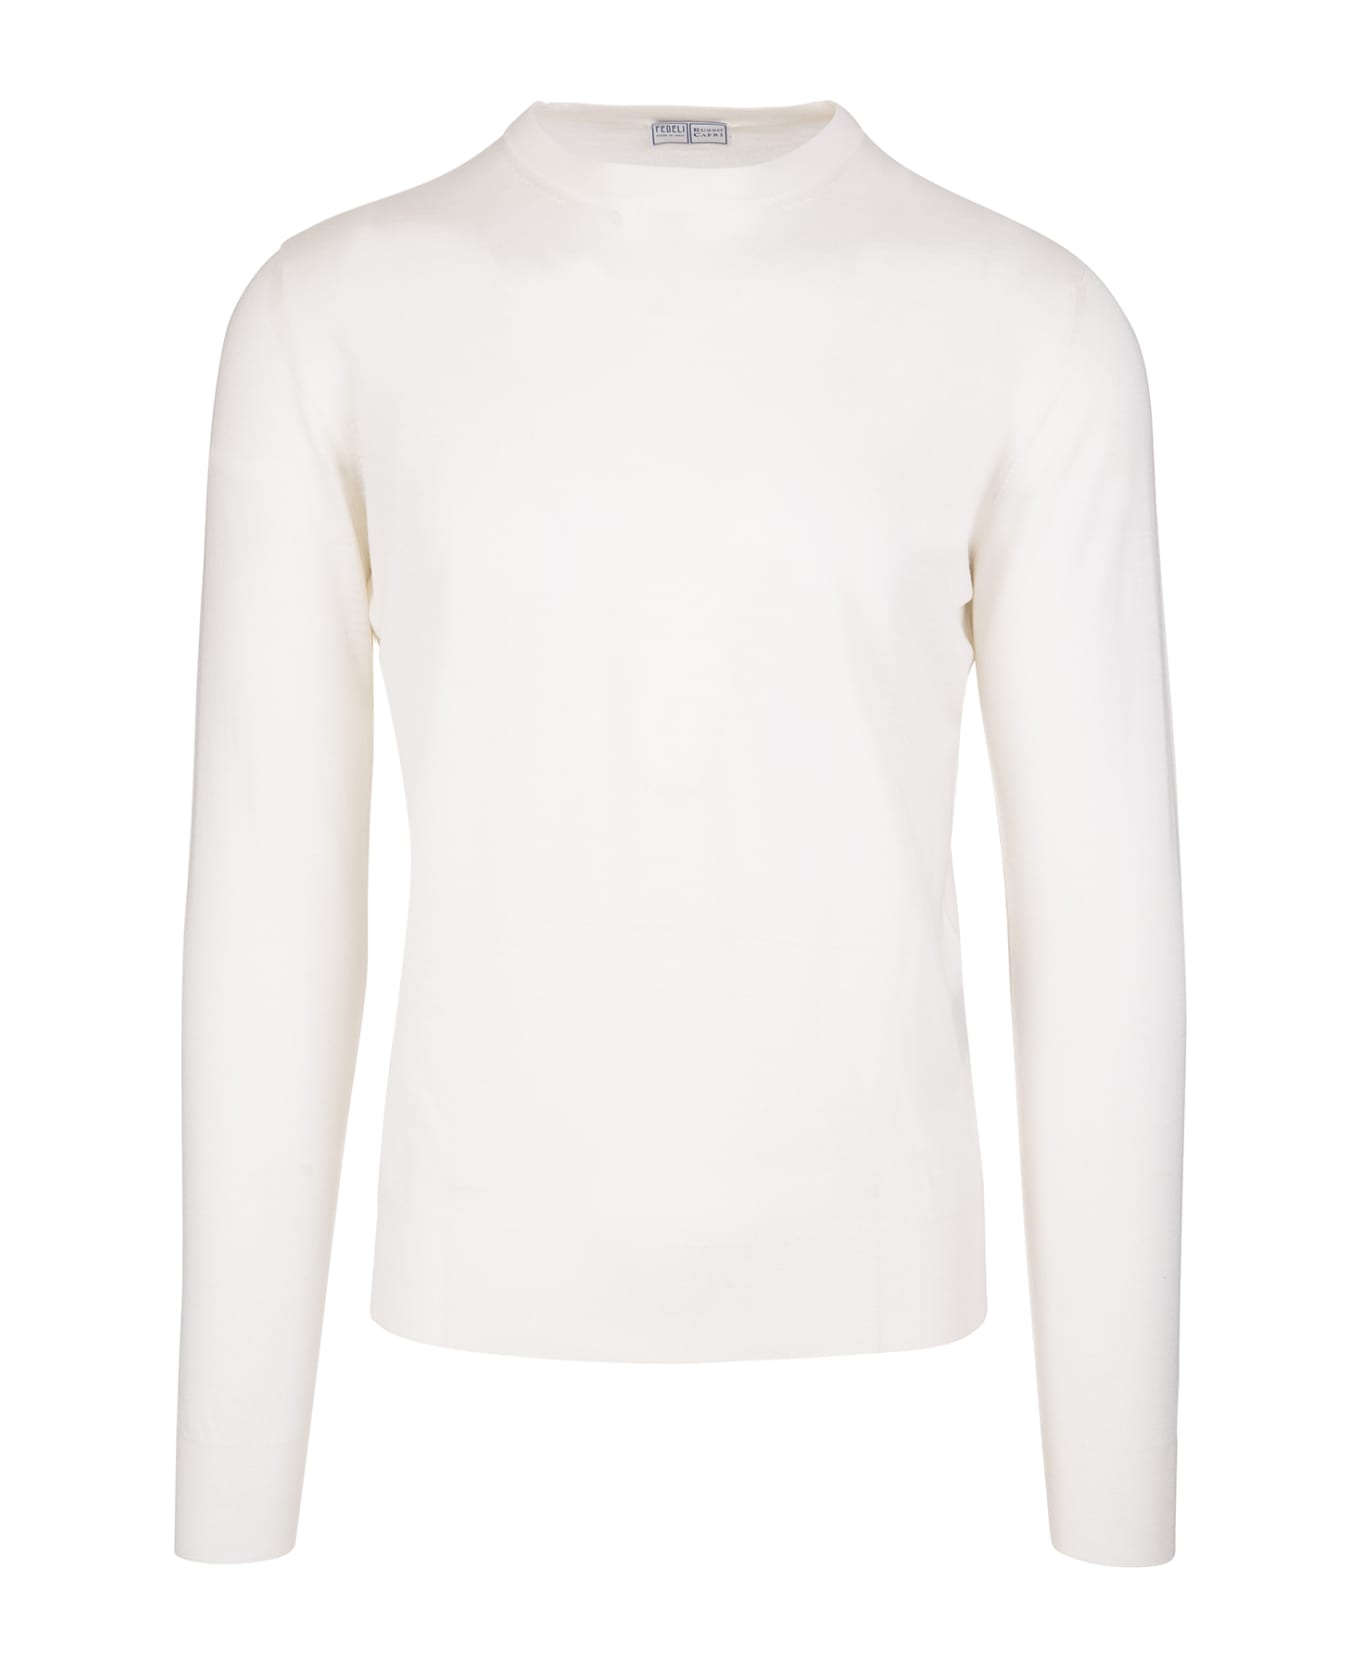 Fedeli Man Crew Neck Pullover In Cream Cashmere - White